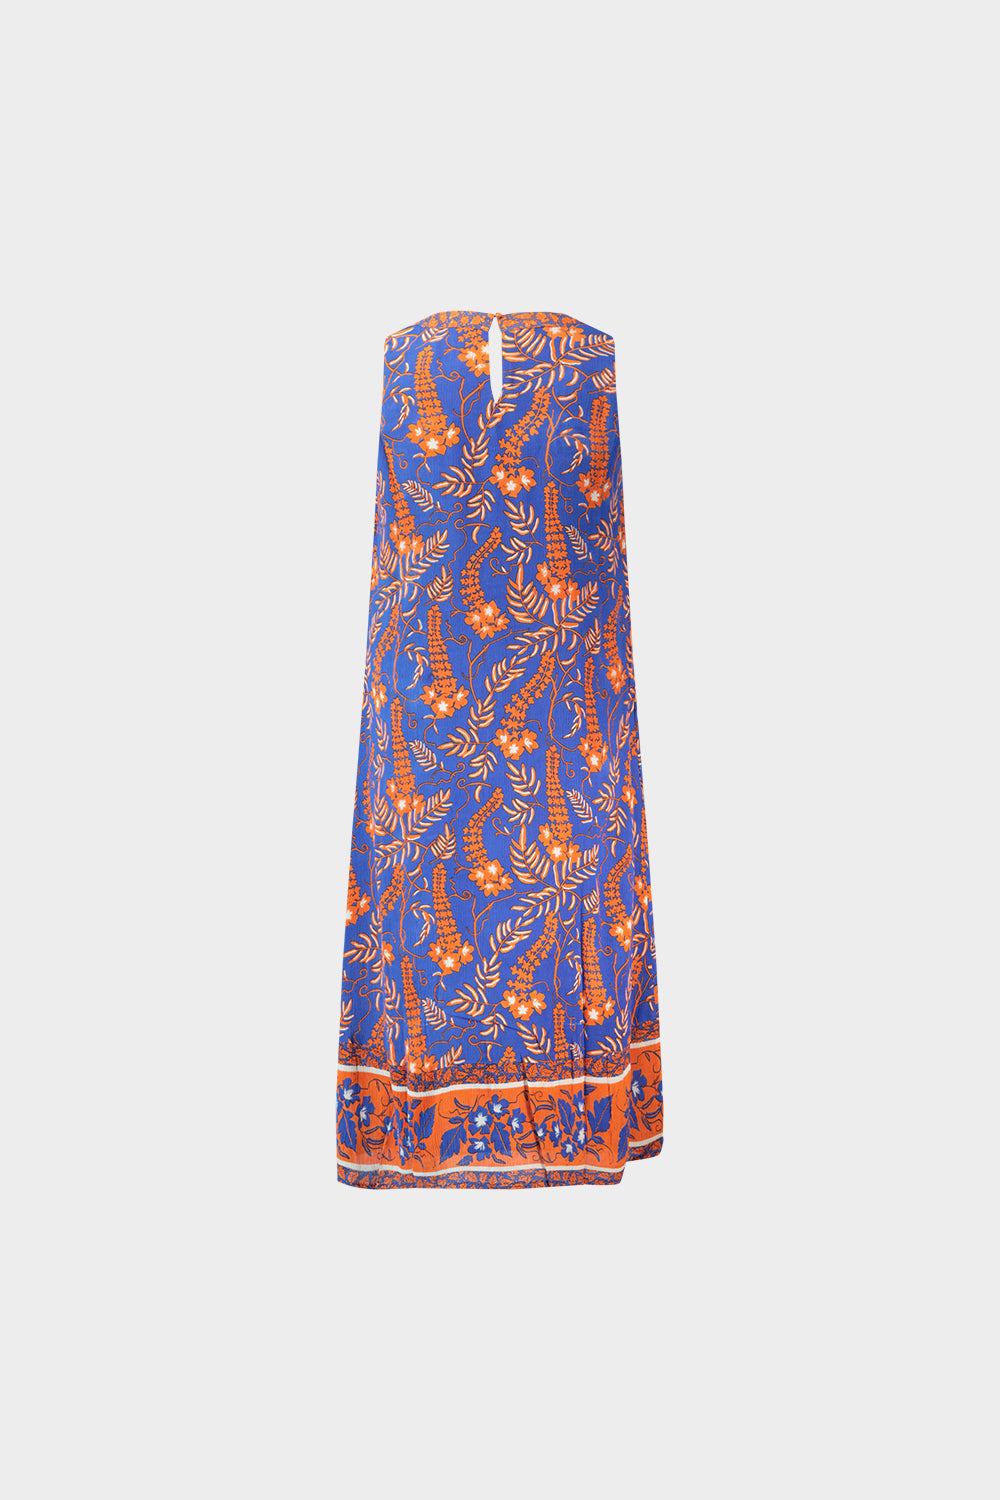 שמלת מידי לנשים הדפס אותנטי RENE DERHY Vendome online | ונדום .